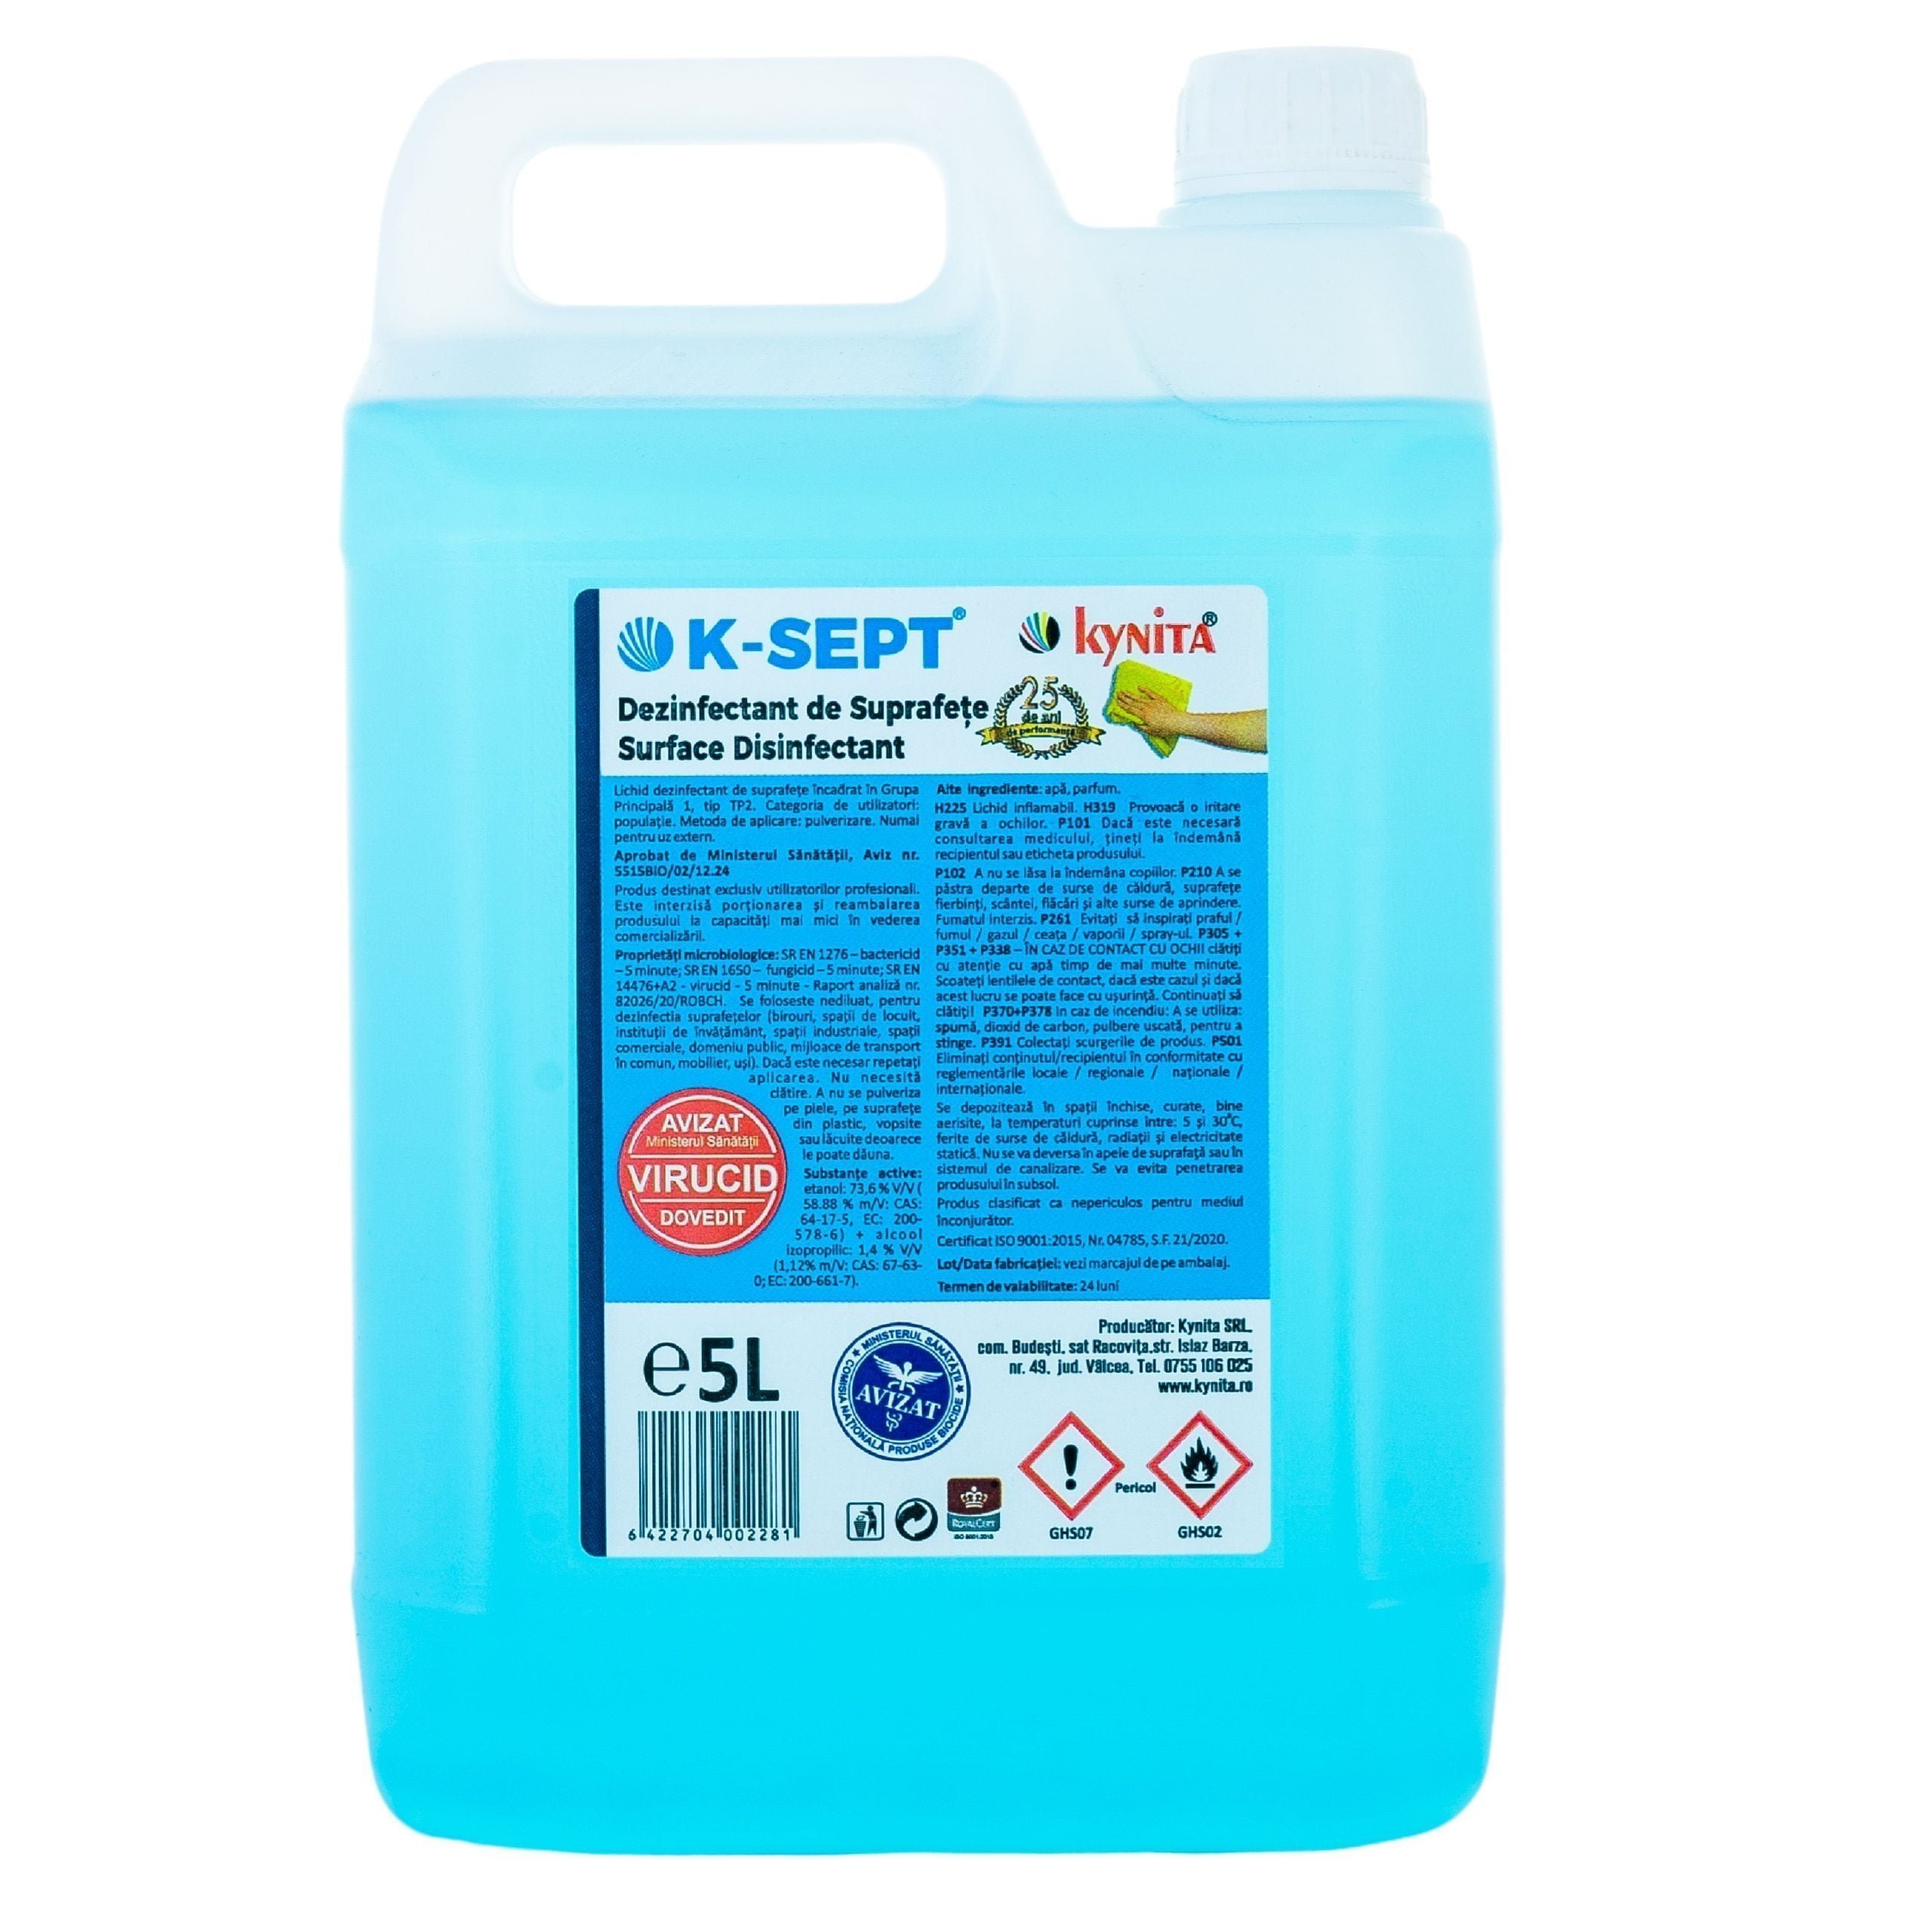 Dezinfectant de Suprafete K-SEPT 5L